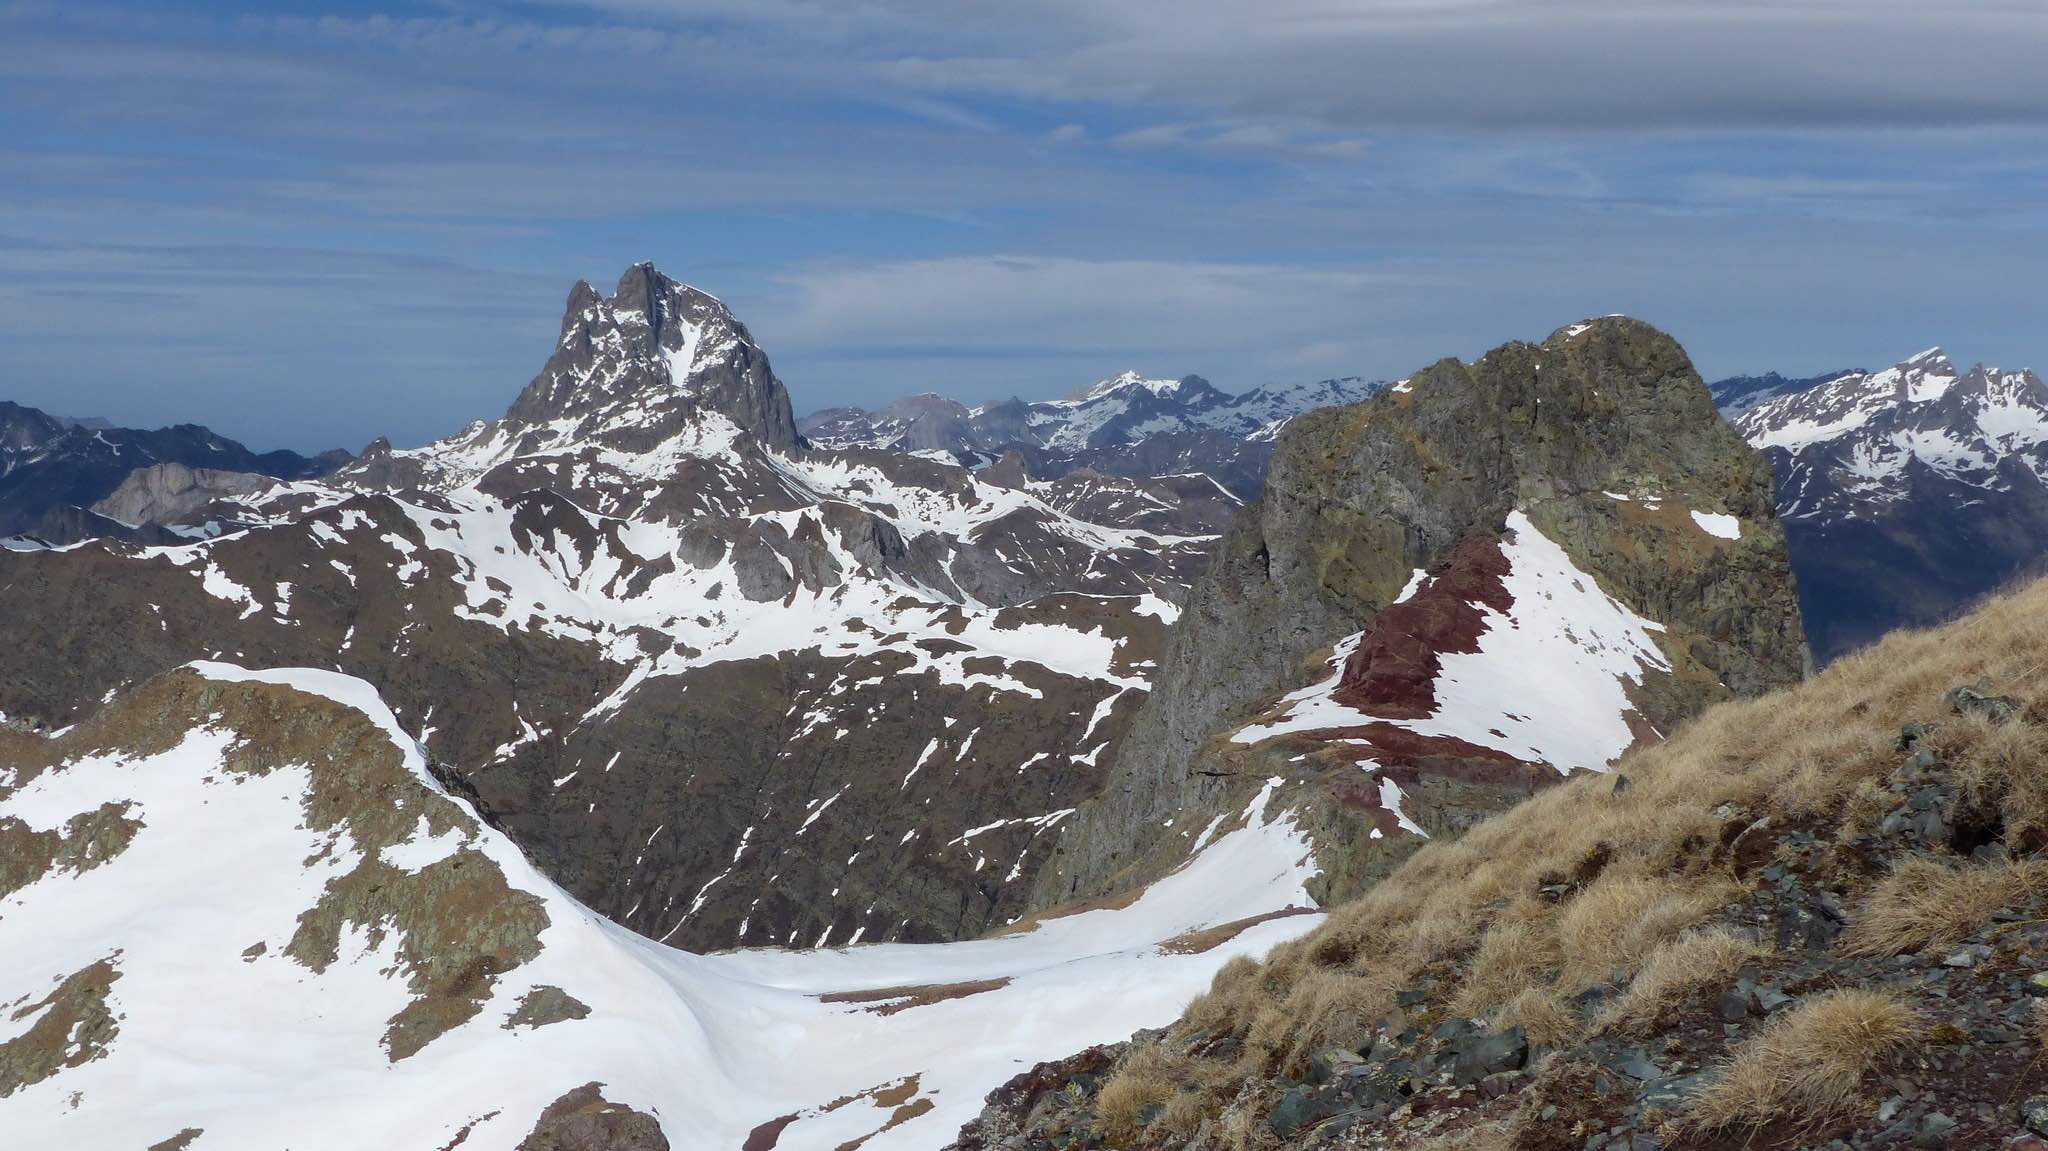 Alpinistas, conservacionistas y científicos contra la unión de Formigal y Astún por Canal Roya